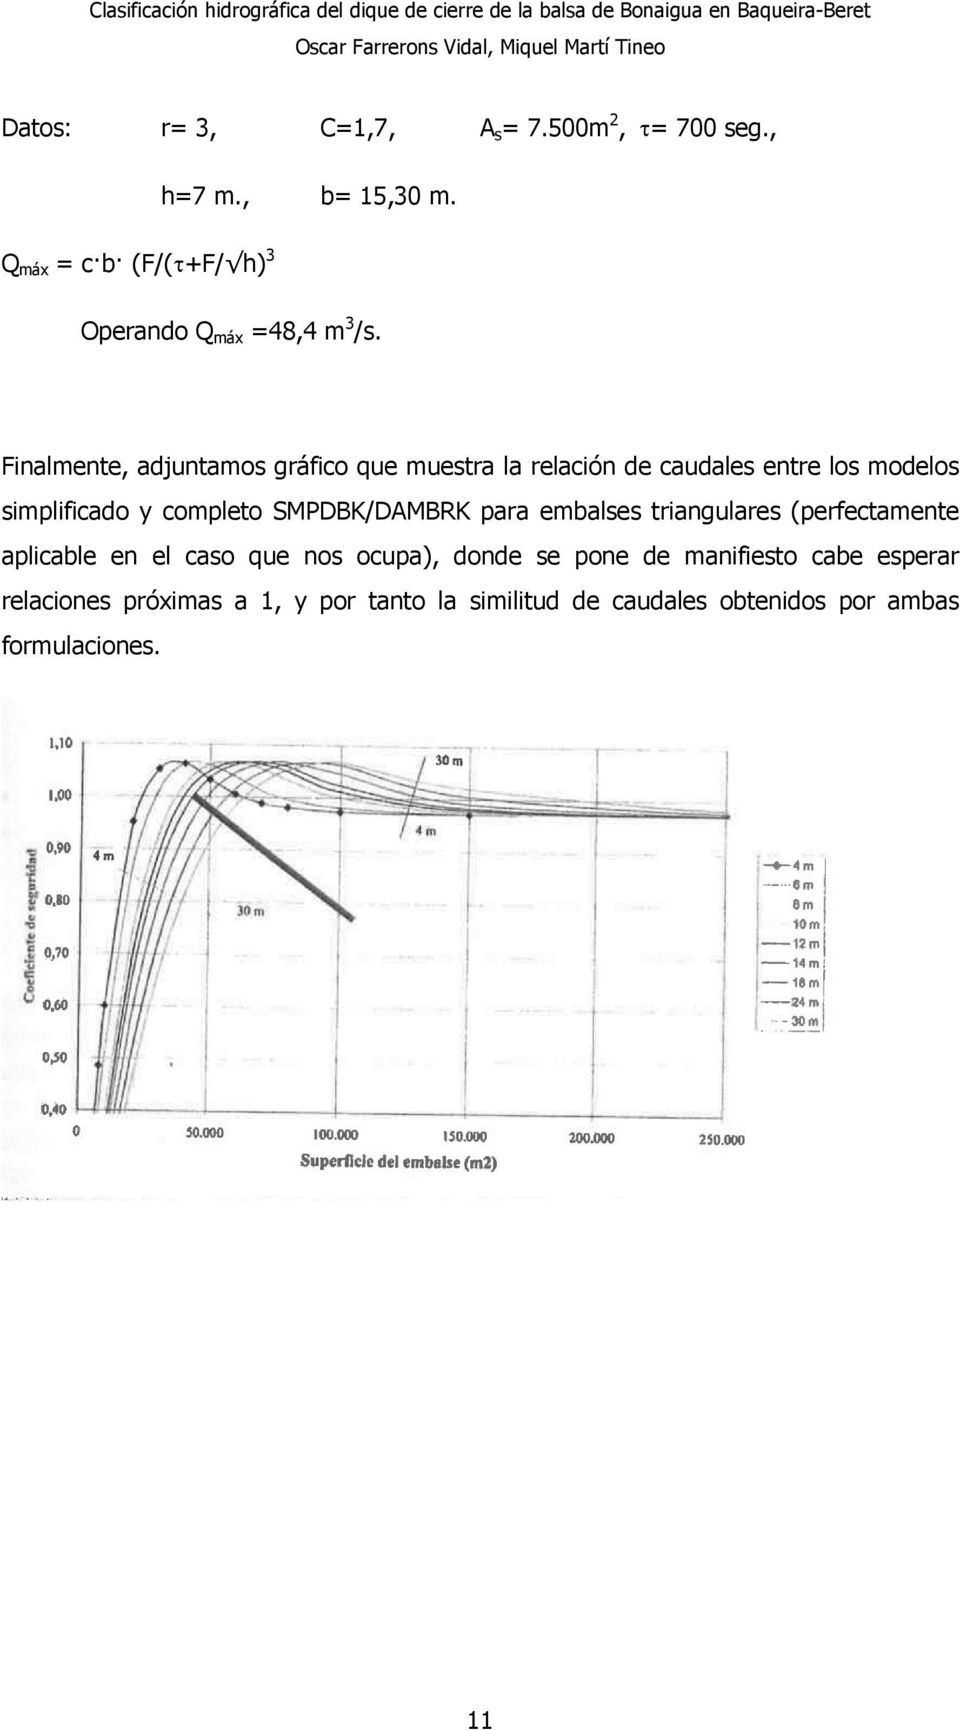 Finalmente, adjuntamos gráfico que muestra la relación de caudales entre los modelos simplificado y completo